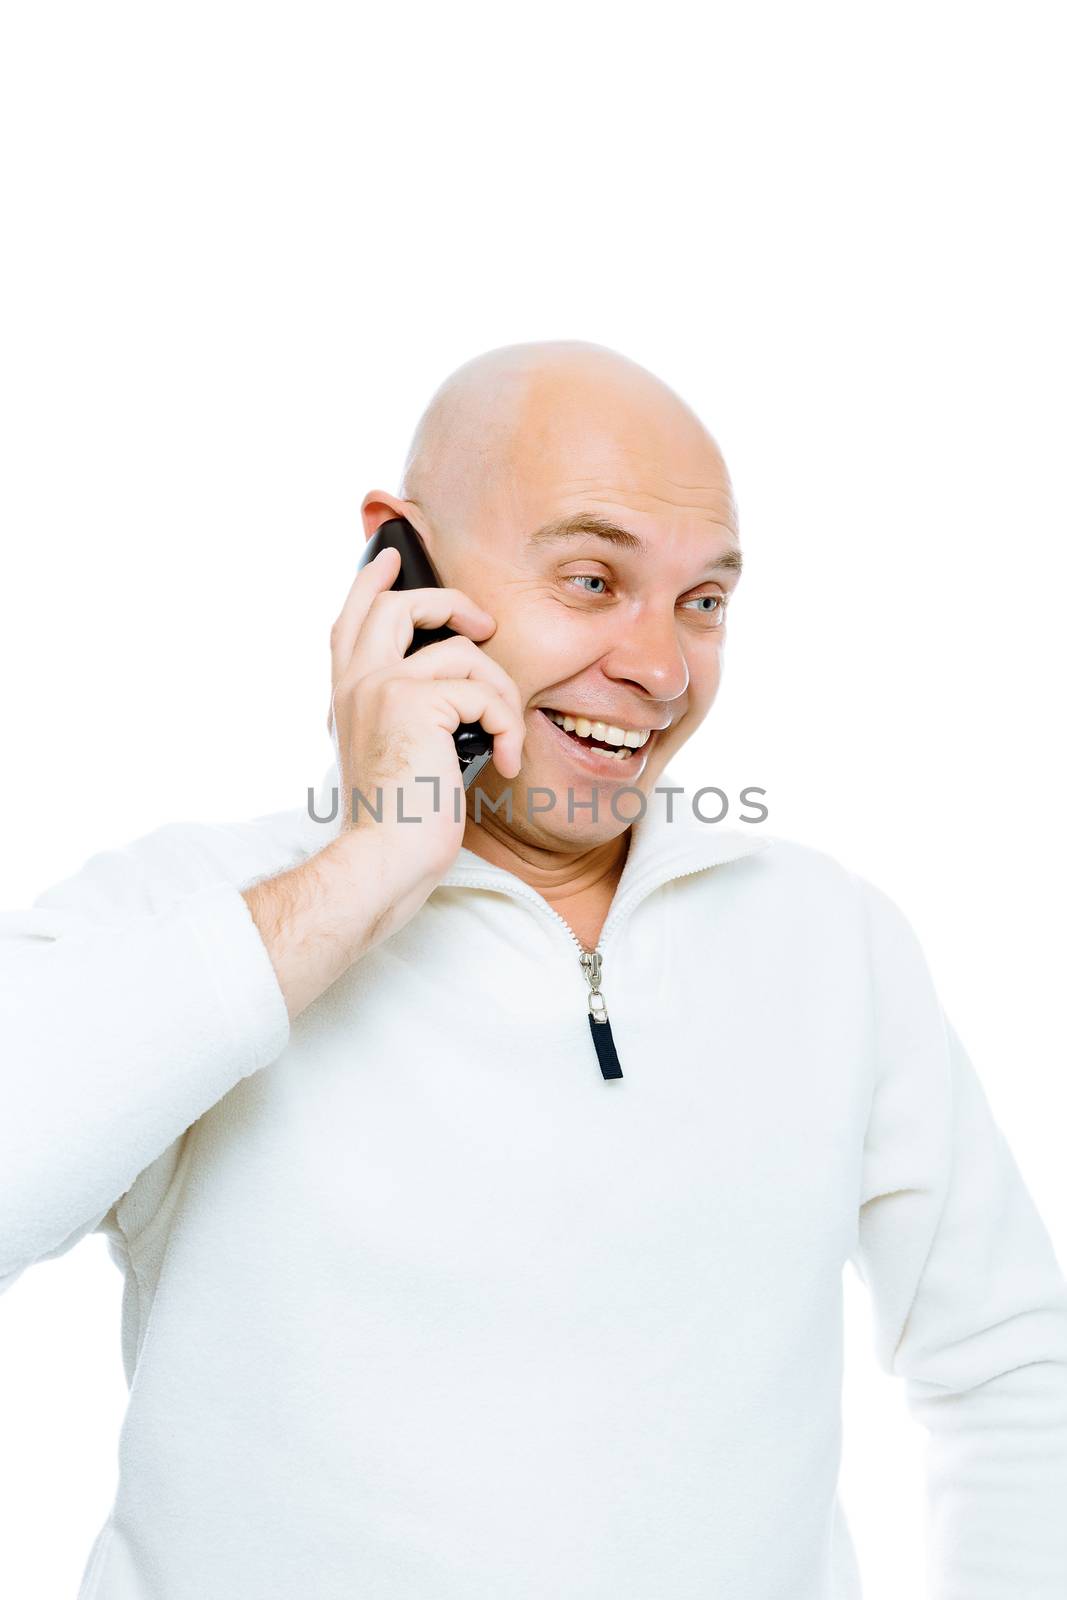 Bald man emotionally communicates by phone. Isolated on white. Studio